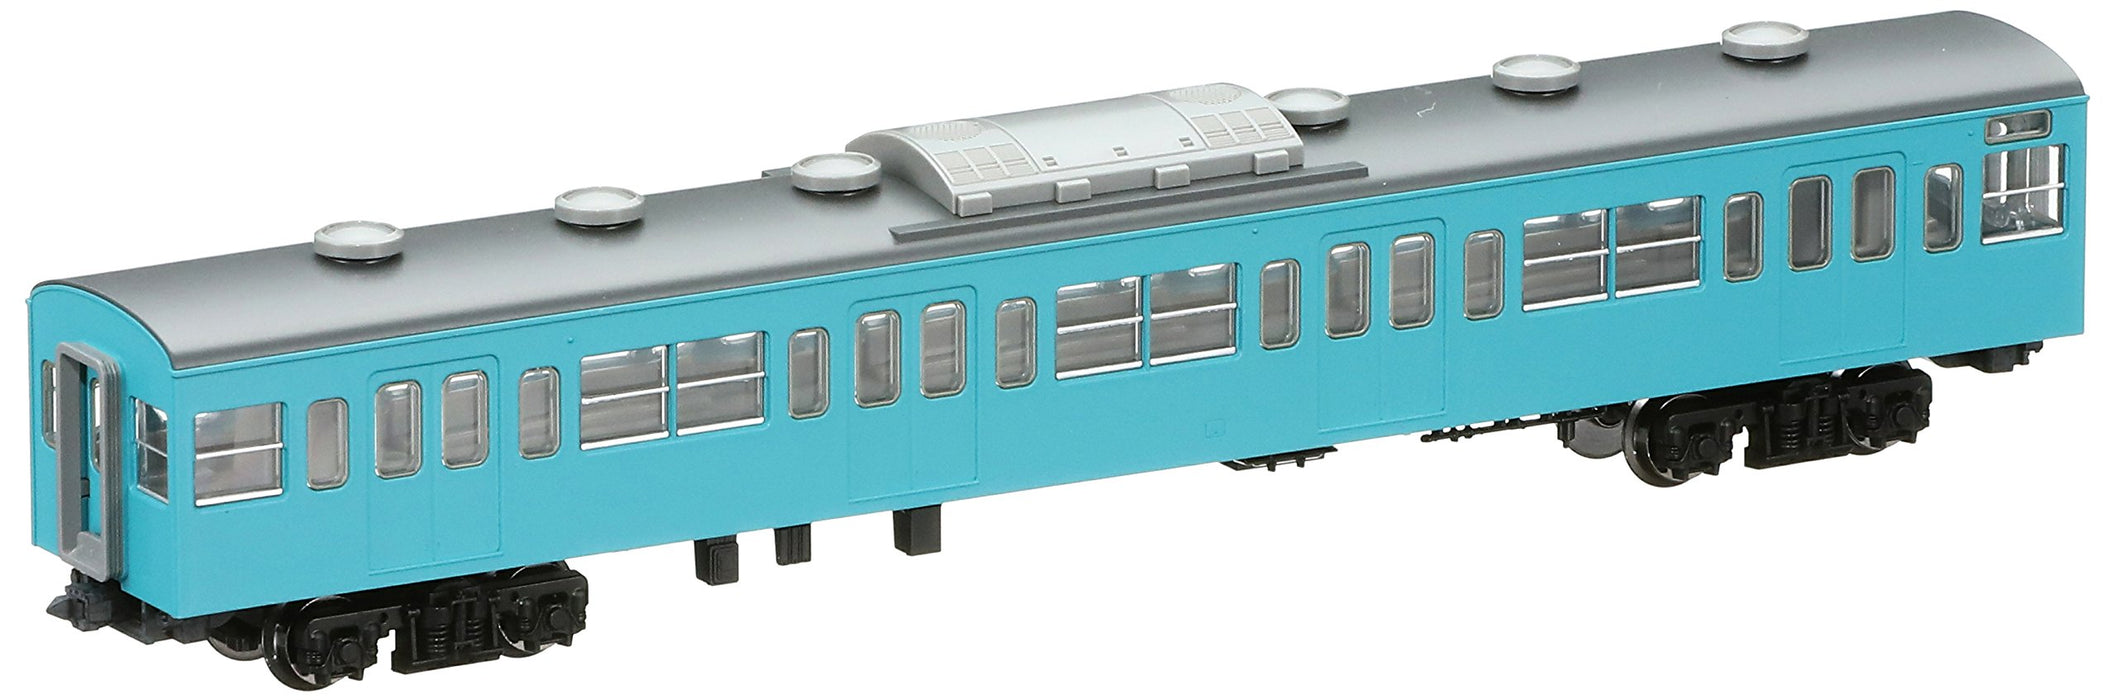 Tomytec Tomix N Gauge Saha 103 Bleu Ciel Premier Type Réfrigéré 9307 Modèle Train